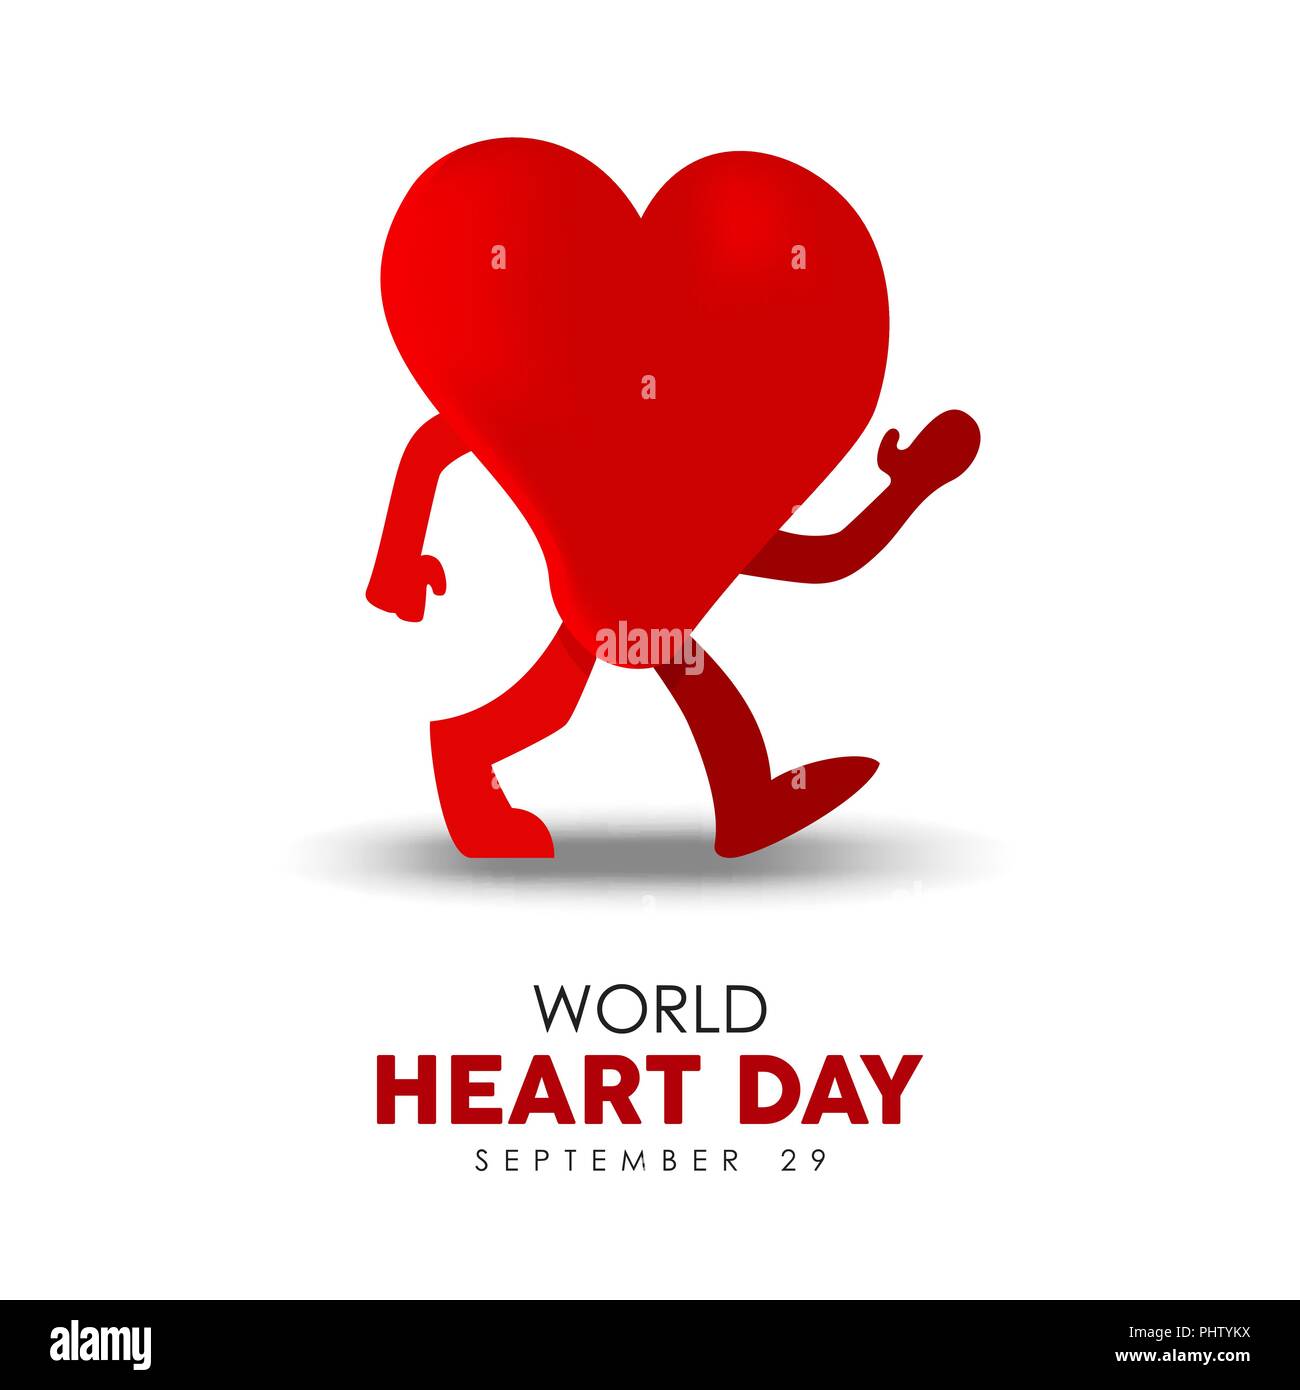 World heart day hi